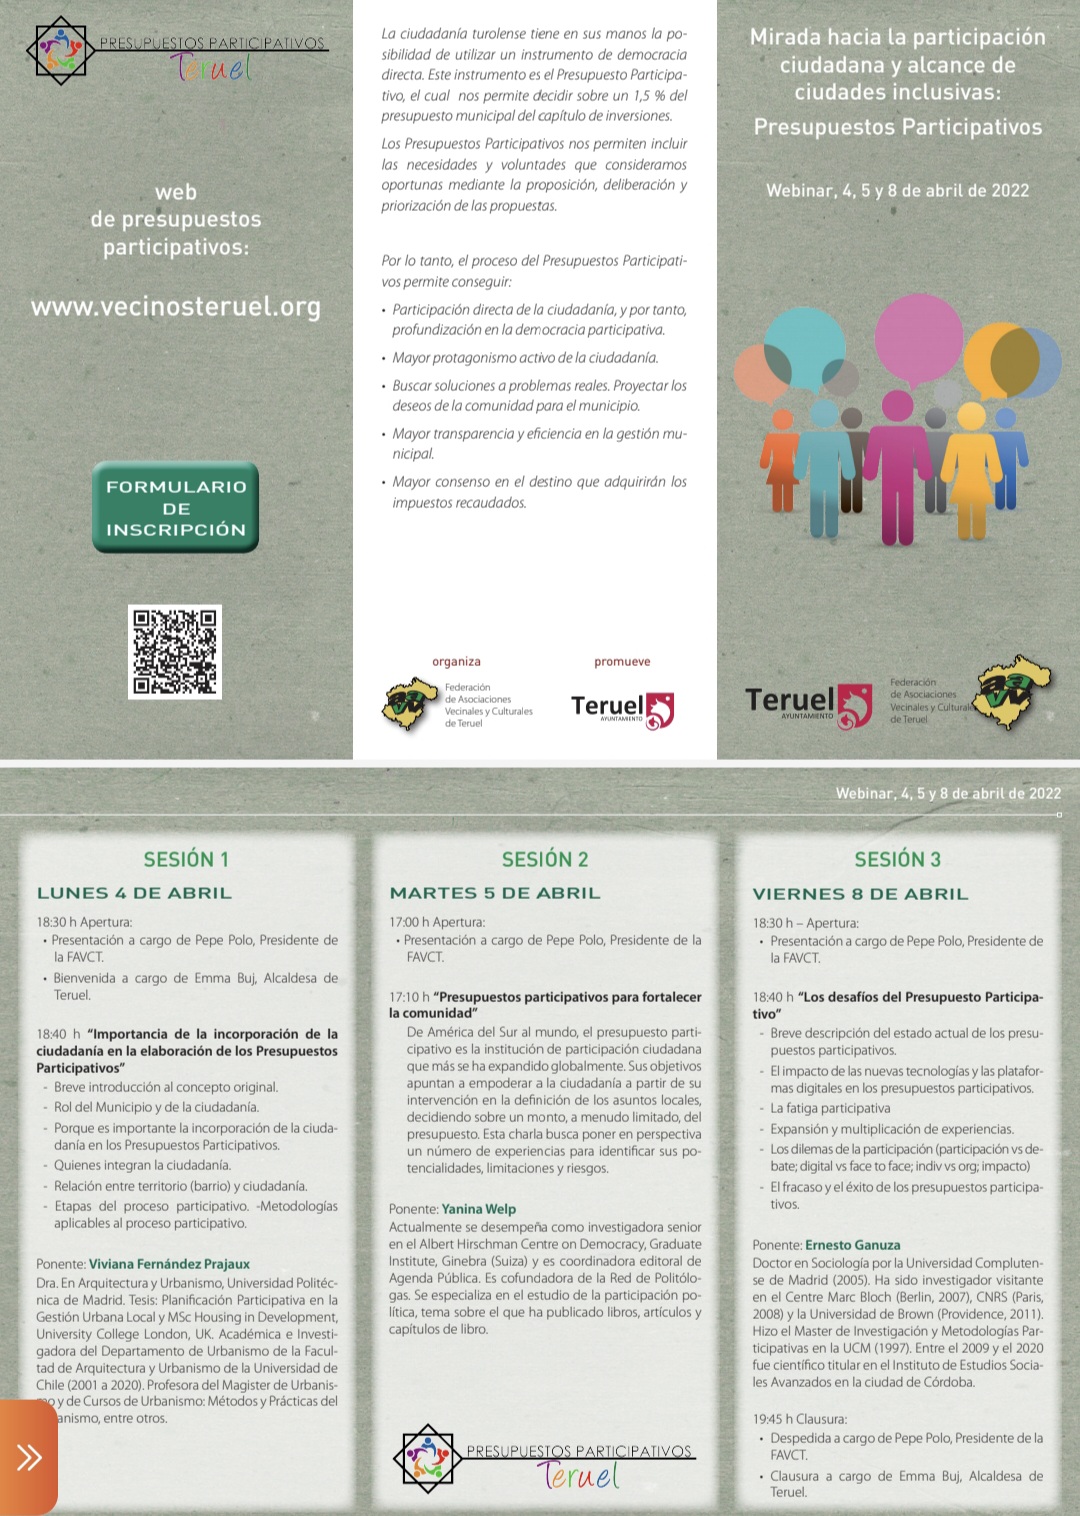 Una webinar analiza los presupuestos participativos de Teruel